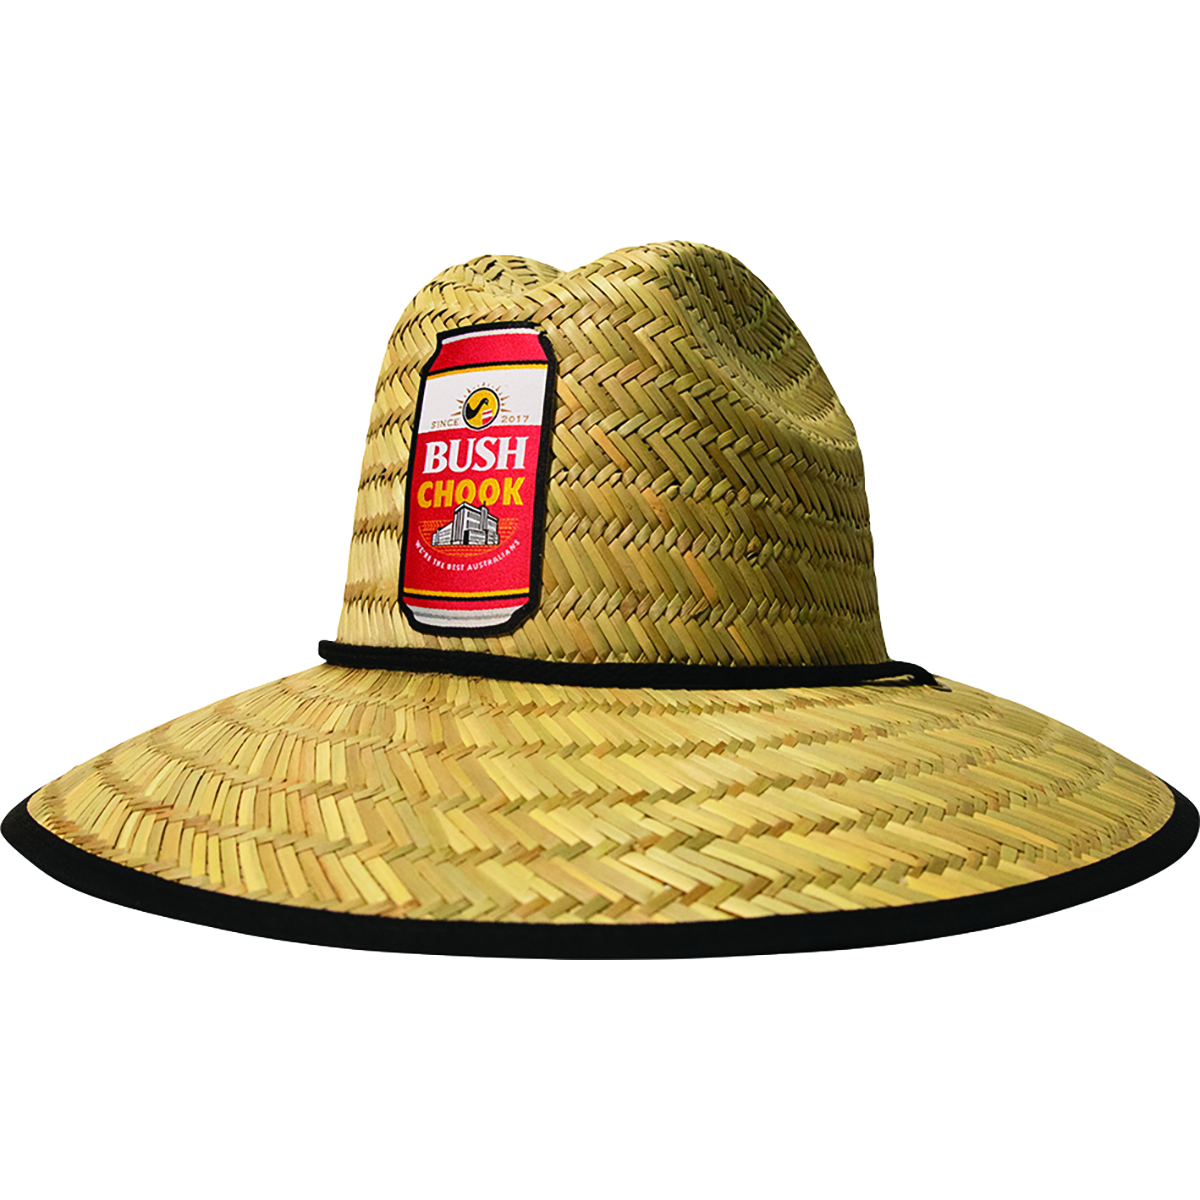 Bush Chook Men's Canned Chook Straw Hat Natural S/M